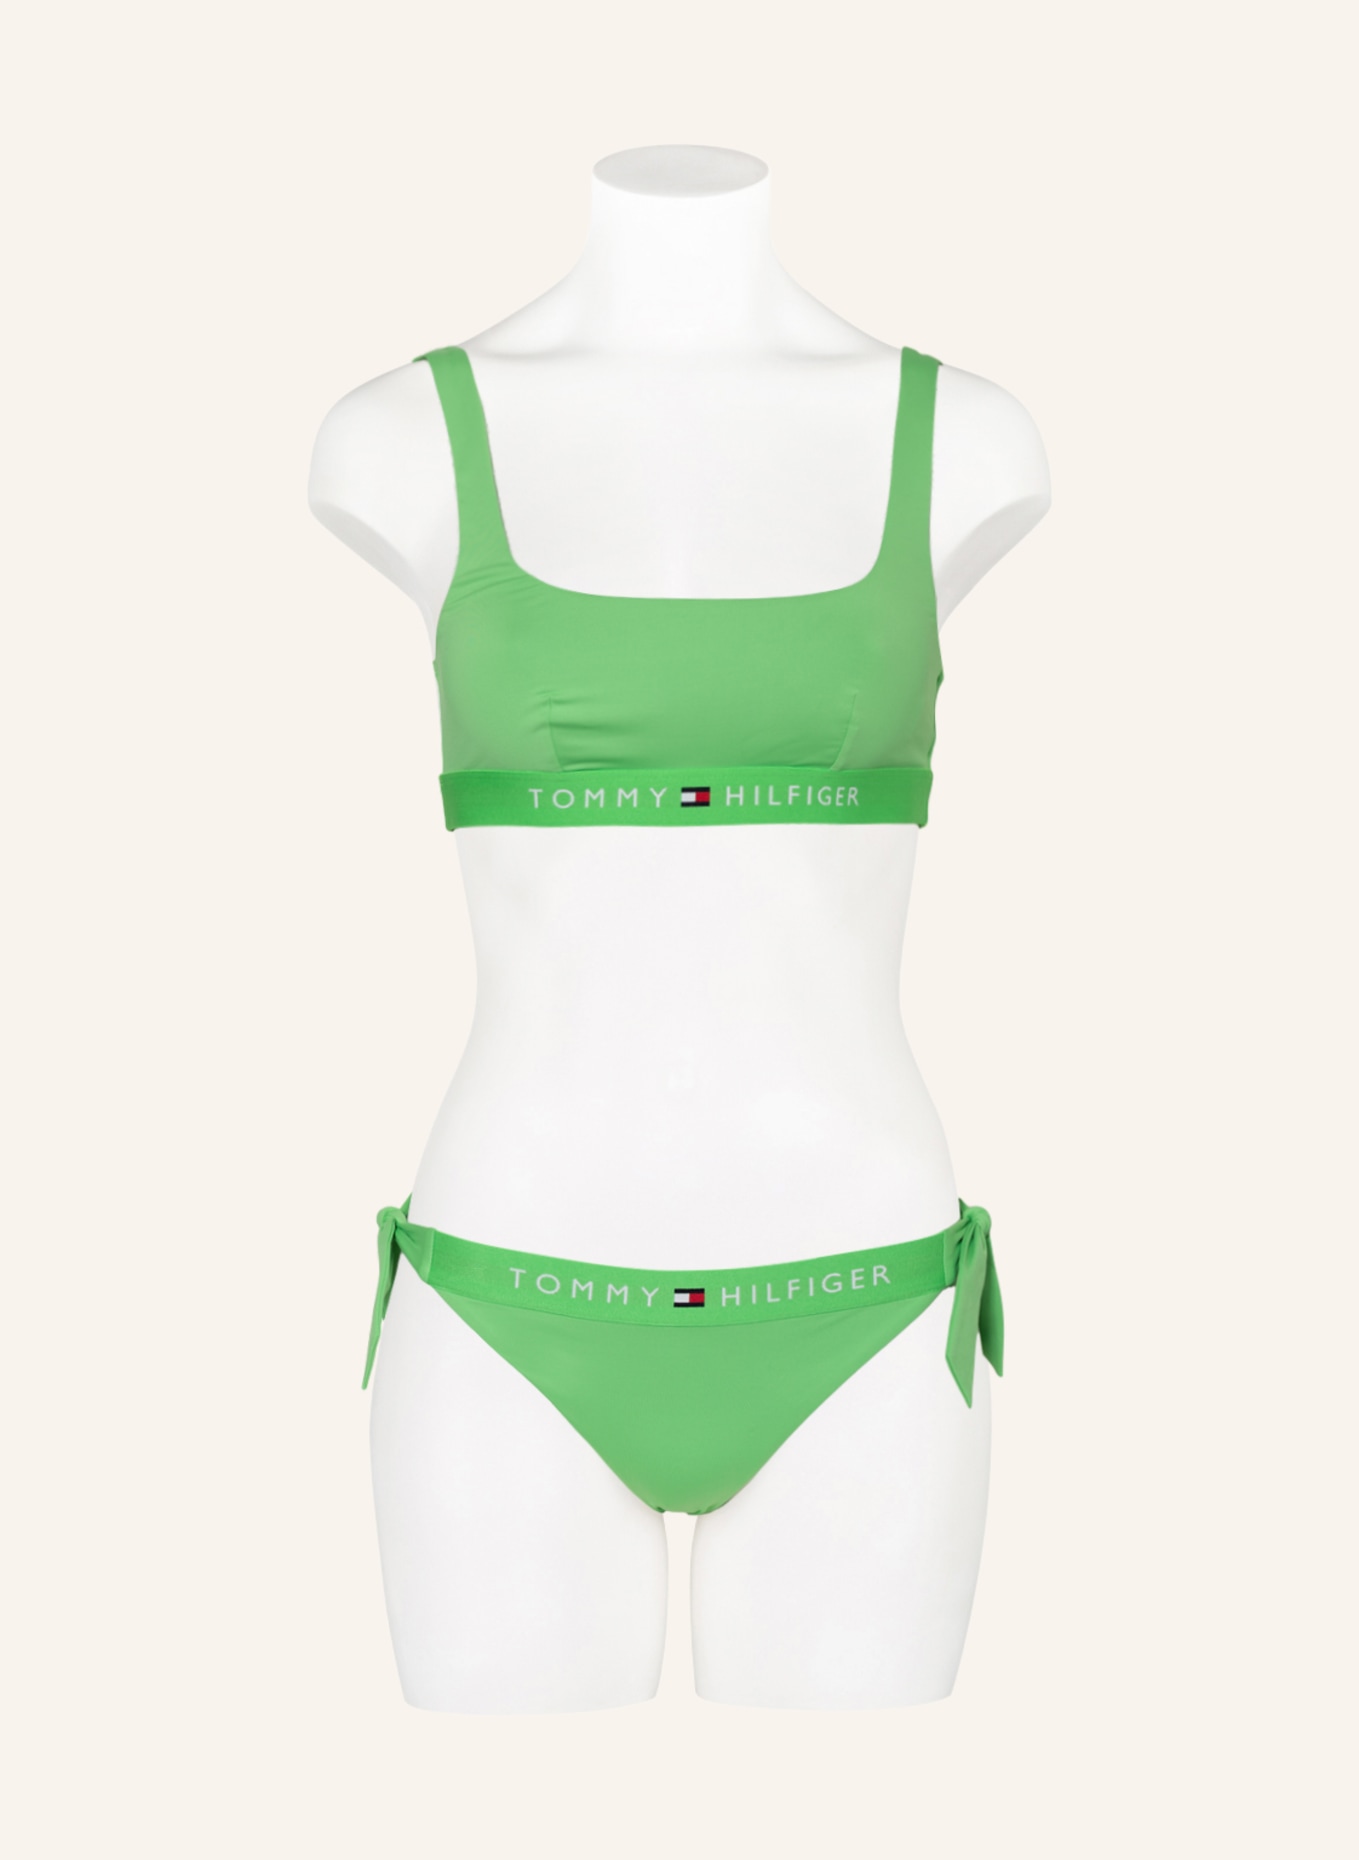 TOMMY HILFIGER Bralette bikini top, Color: LIGHT GREEN (Image 2)